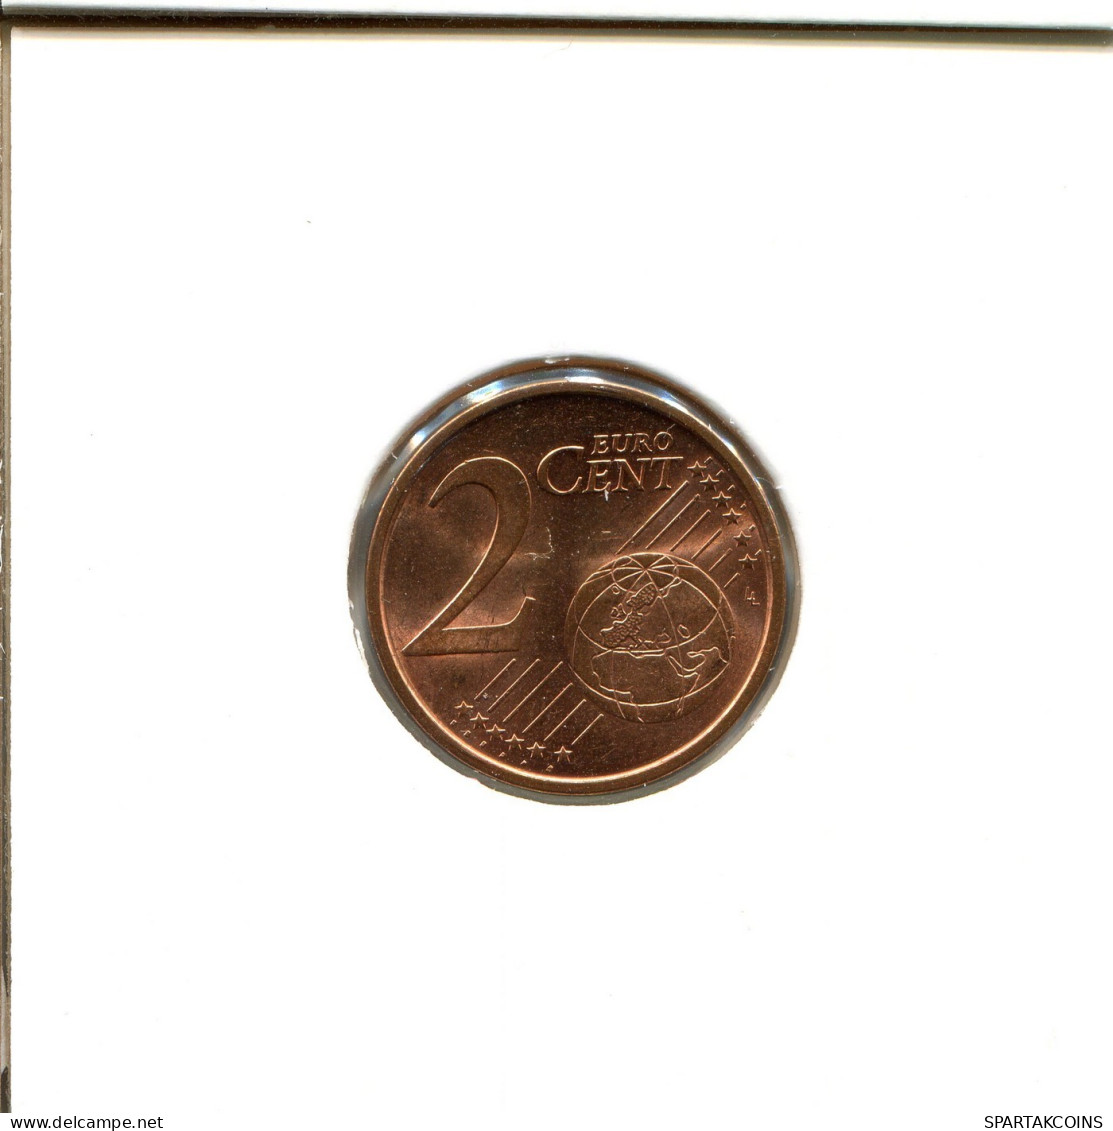 2 EURO CENTS 2012 ESPAÑA Moneda SPAIN #EU353.E.A - Espagne